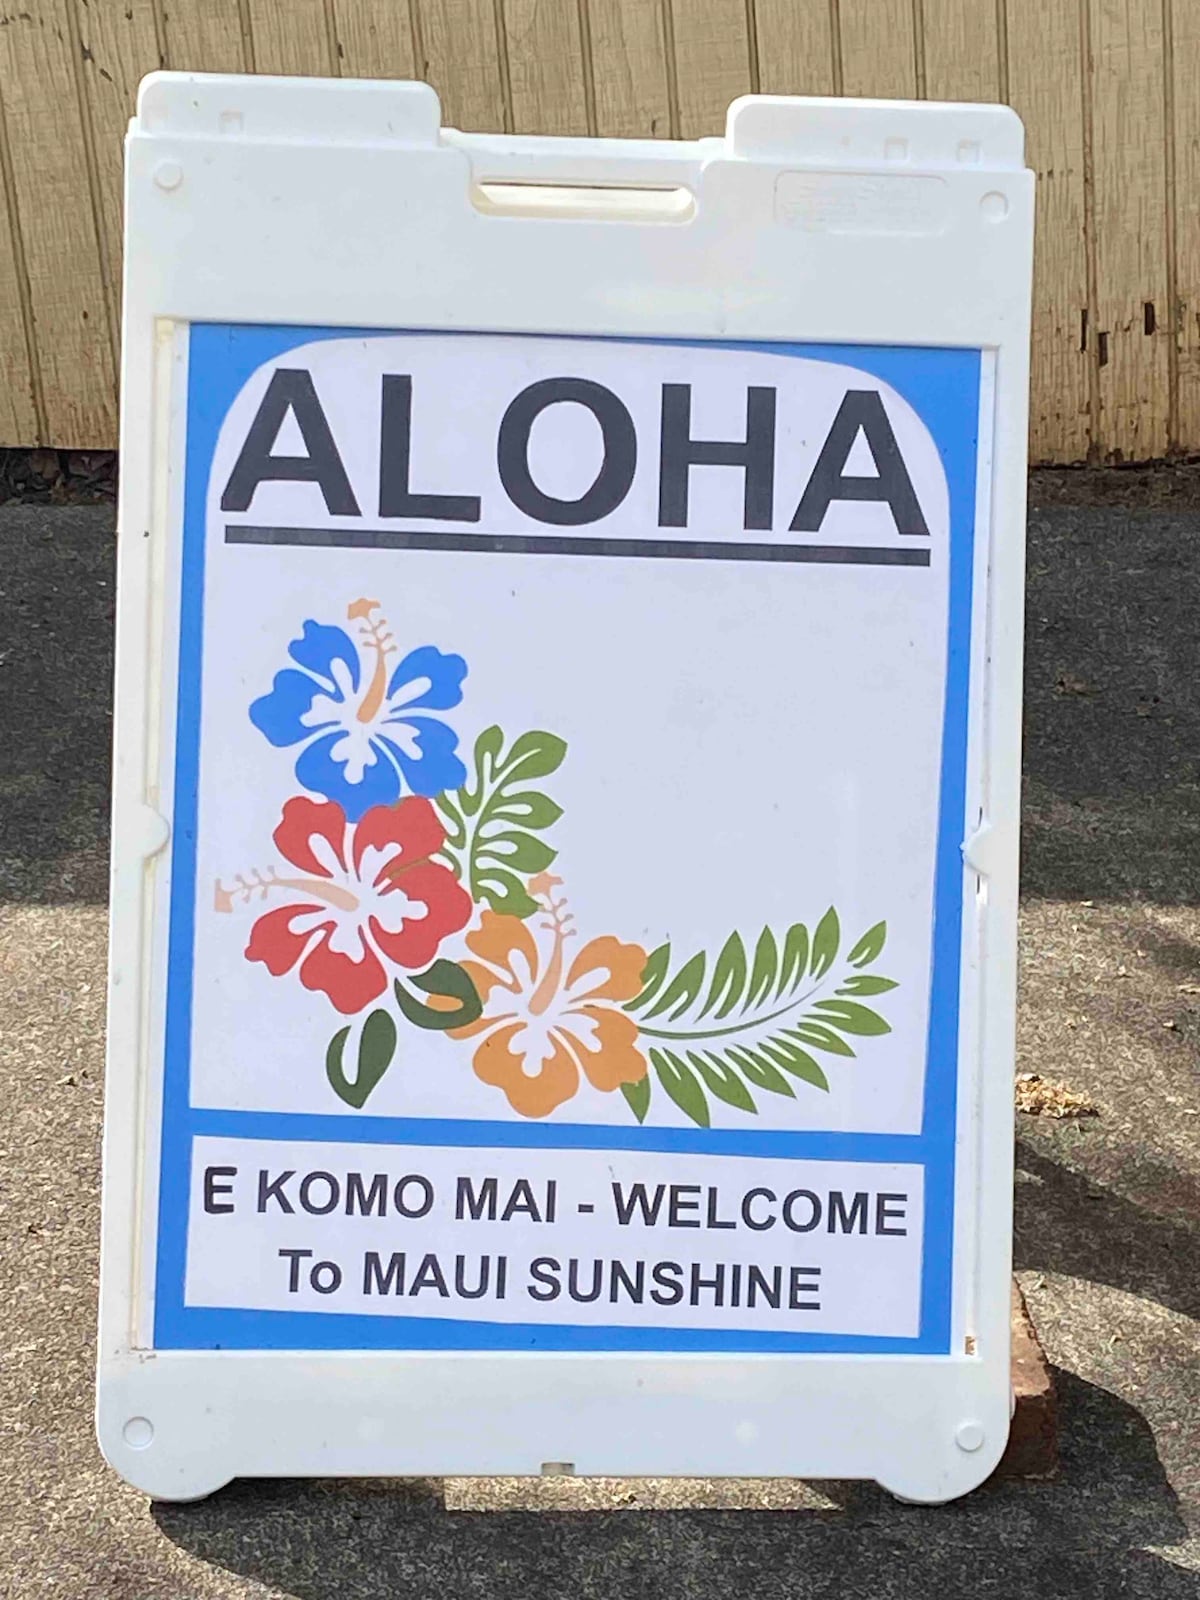 独立单间公寓Maui - Aloha客房